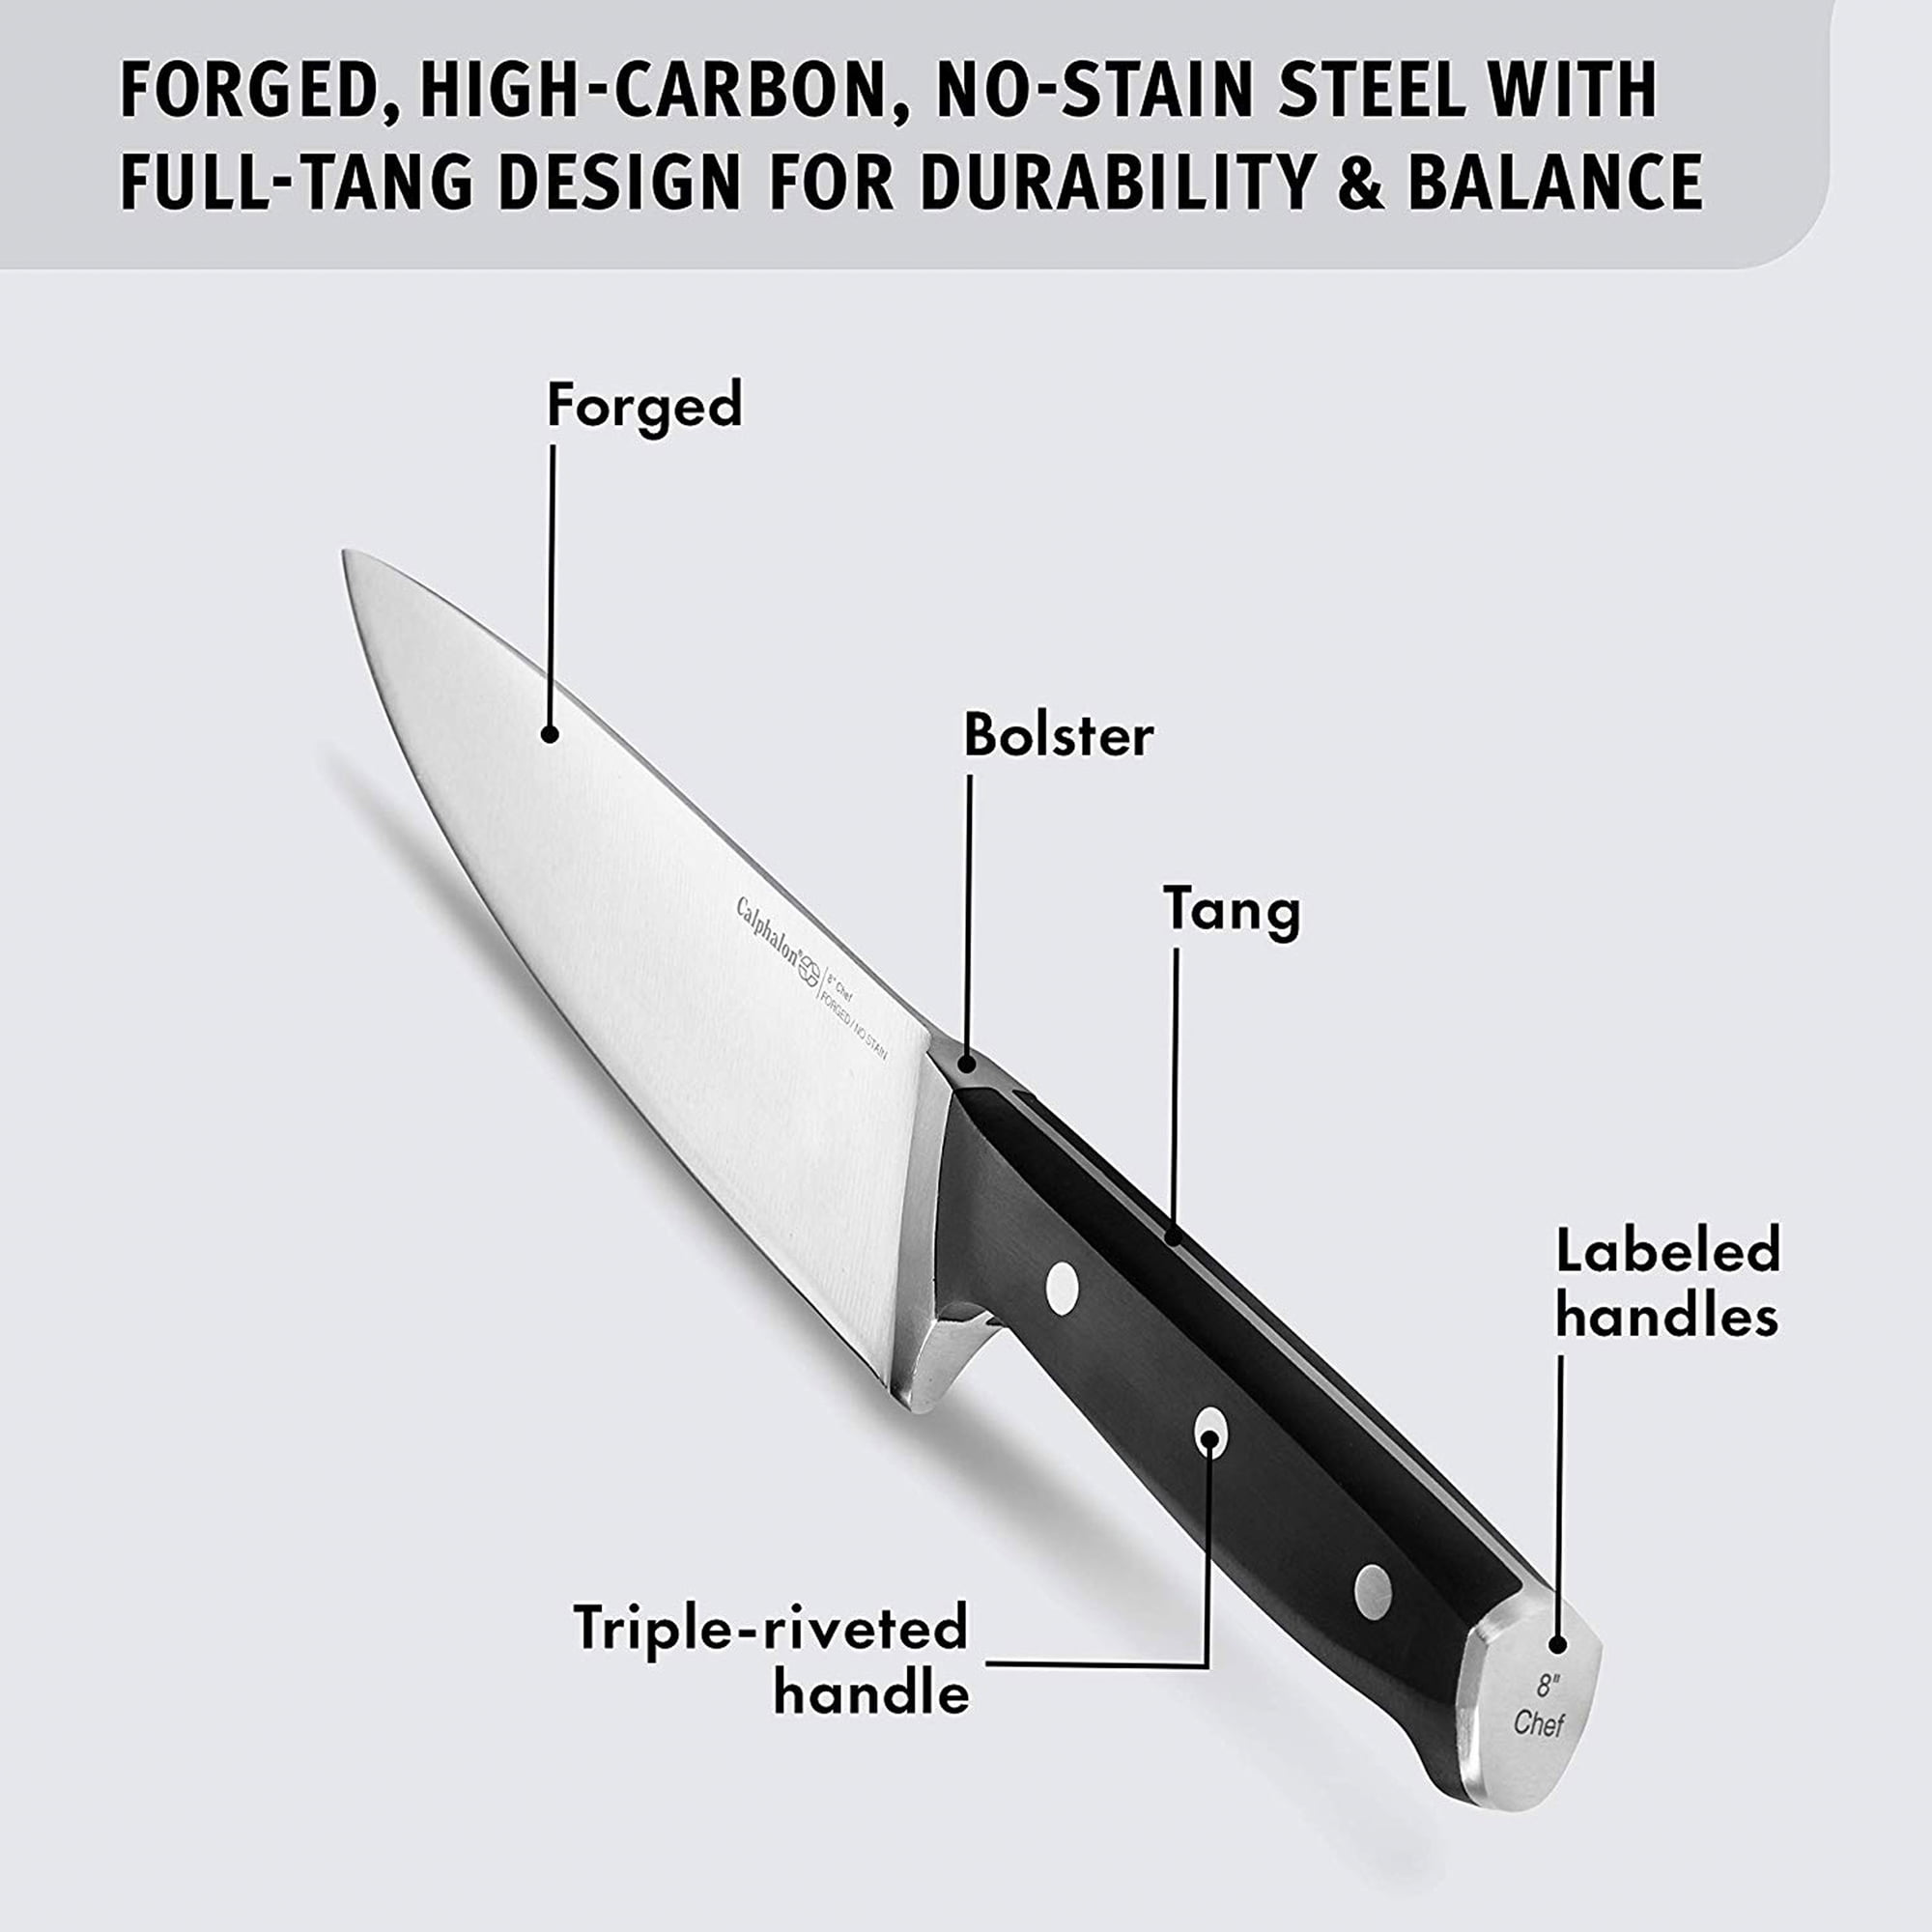 Calphalon Precision SharpIN Nonstick 13-Piece Knife Set w/ Self-Sharpening  Block, 1 Piece - Fred Meyer